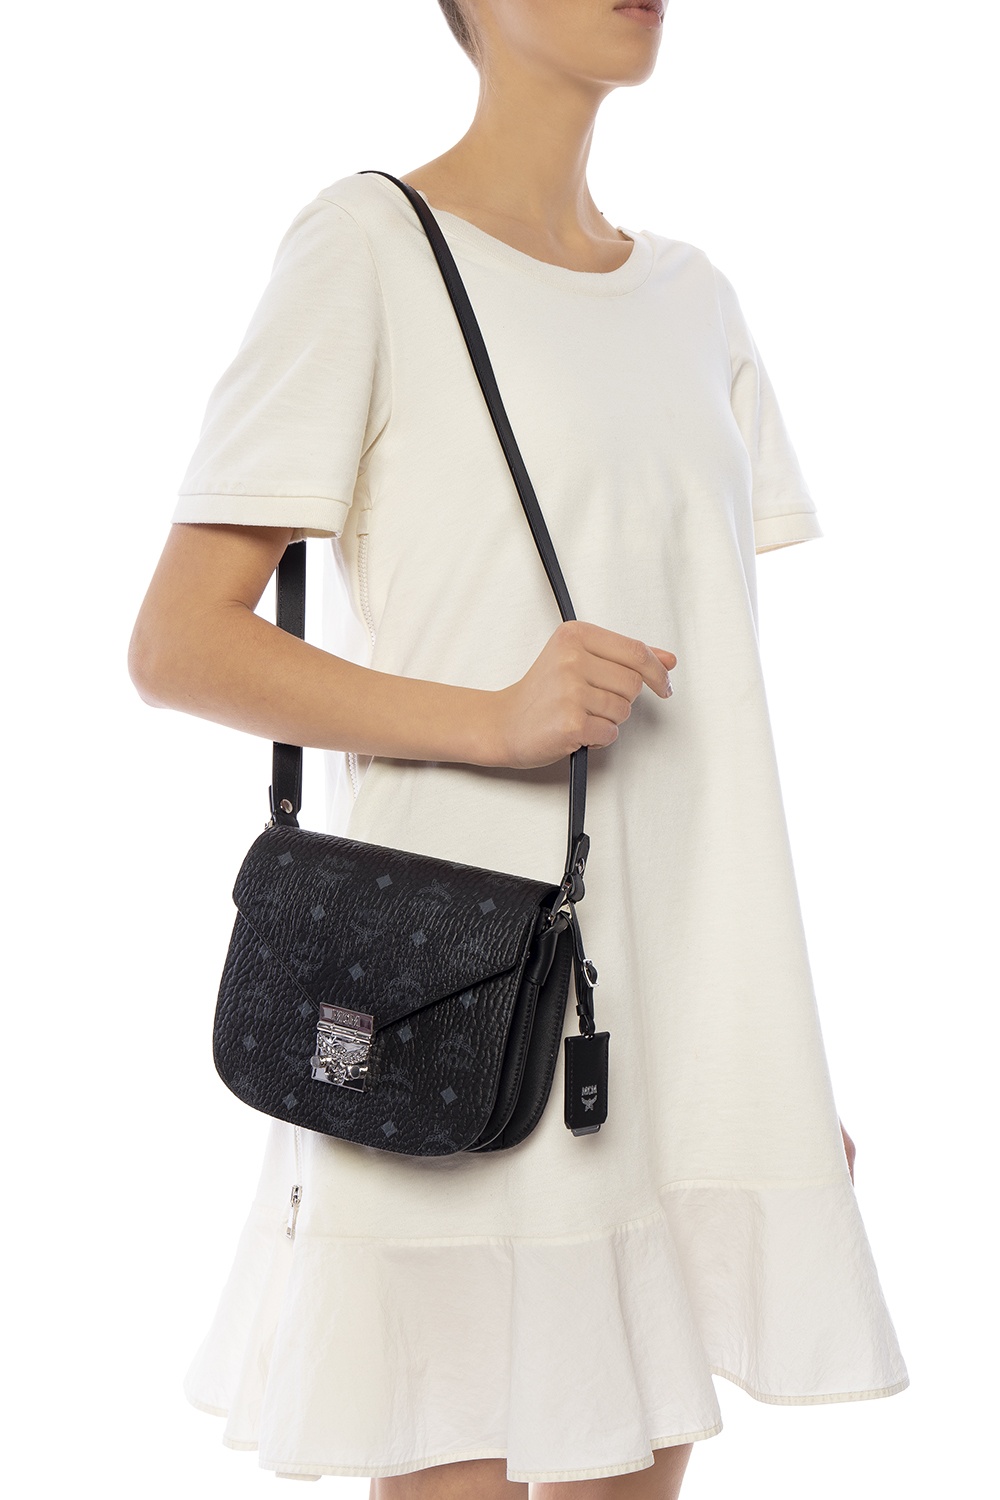 Mcm Patricia Visetos Small Shoulder Bag In Black